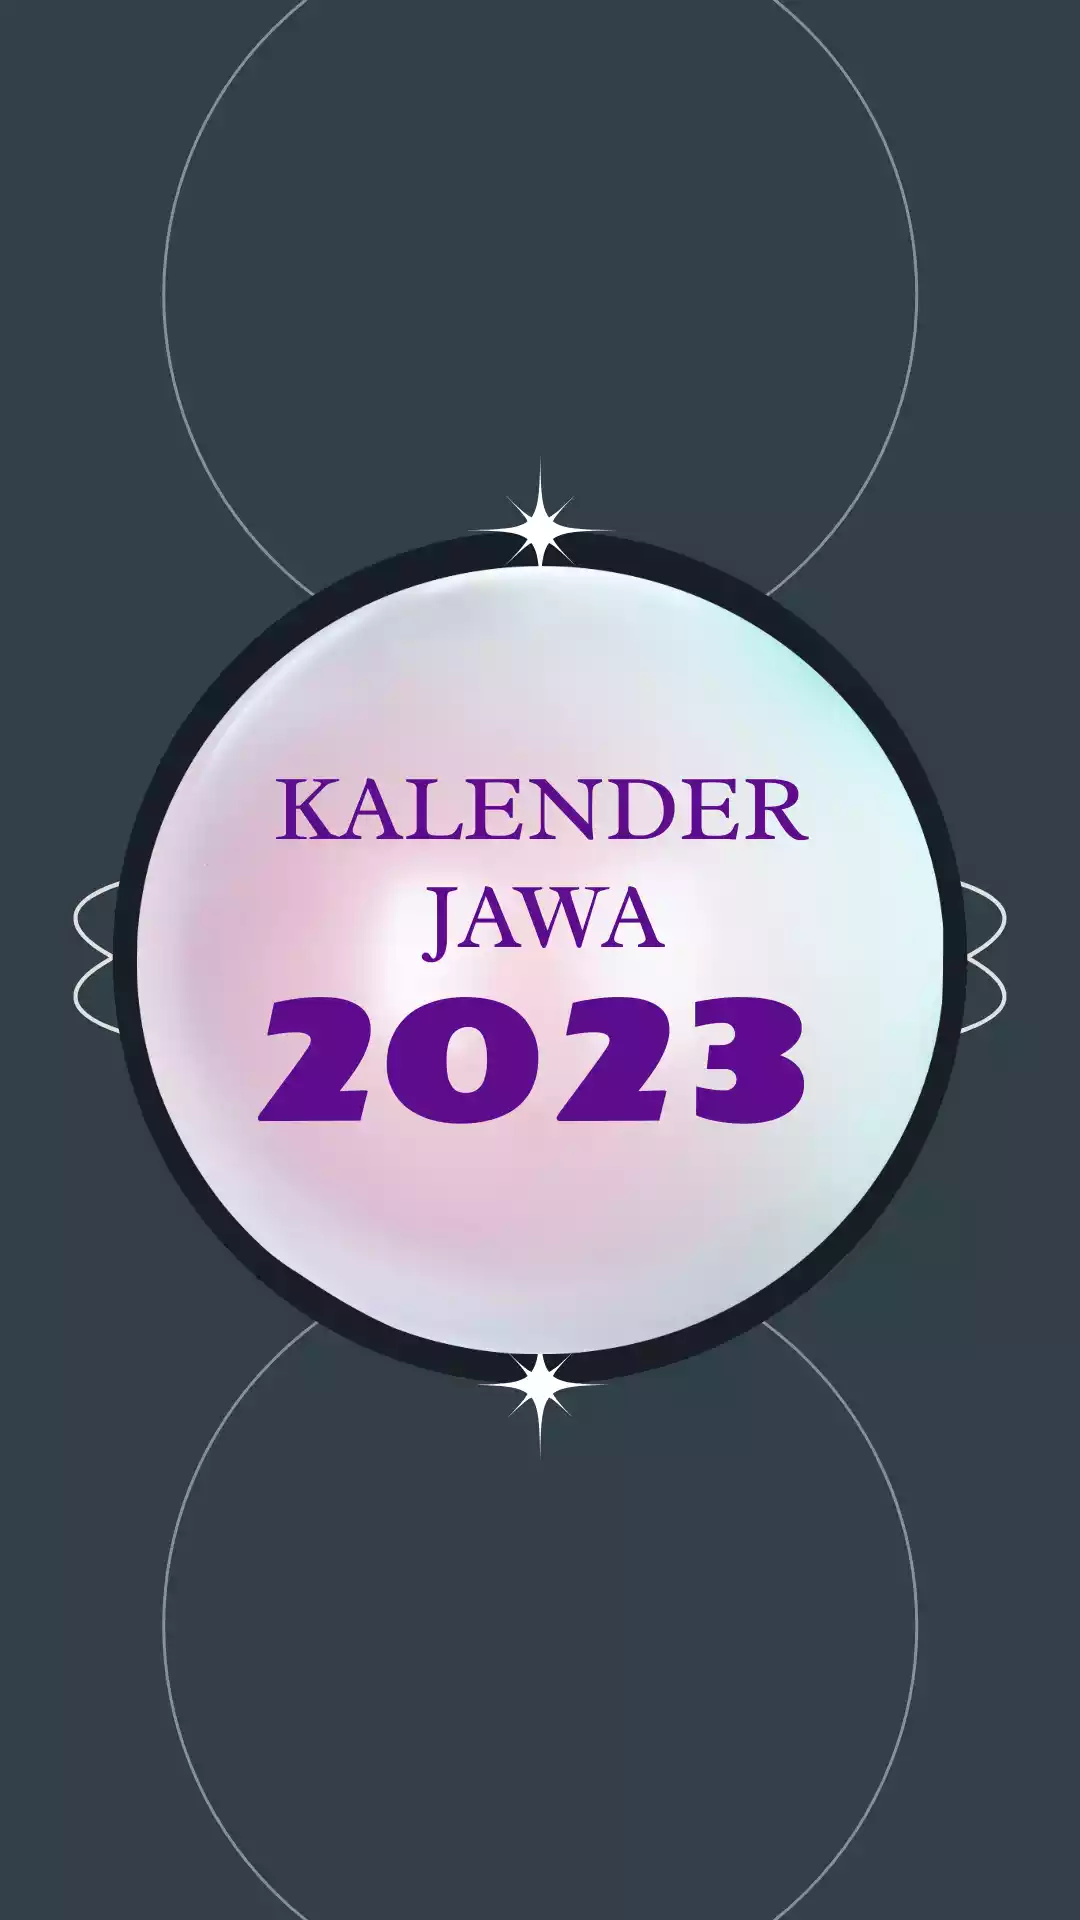 Kalender Jawa 2023